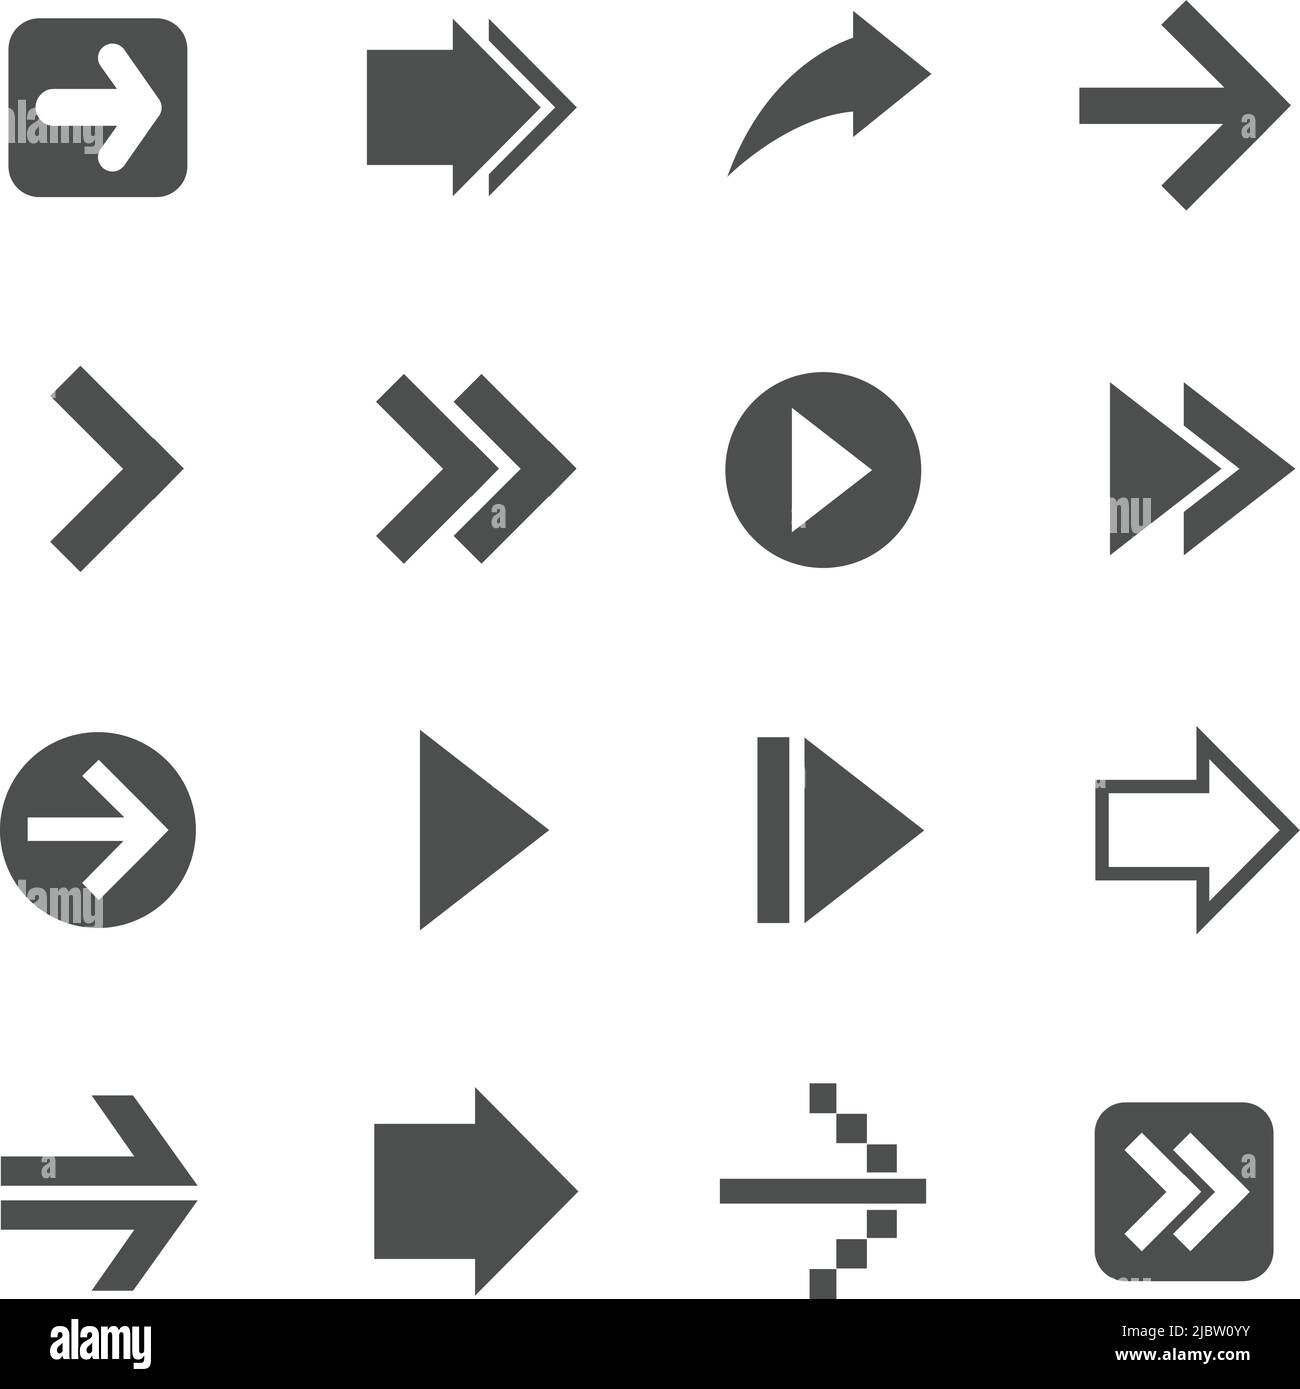 arrows vector icons Stock Vector